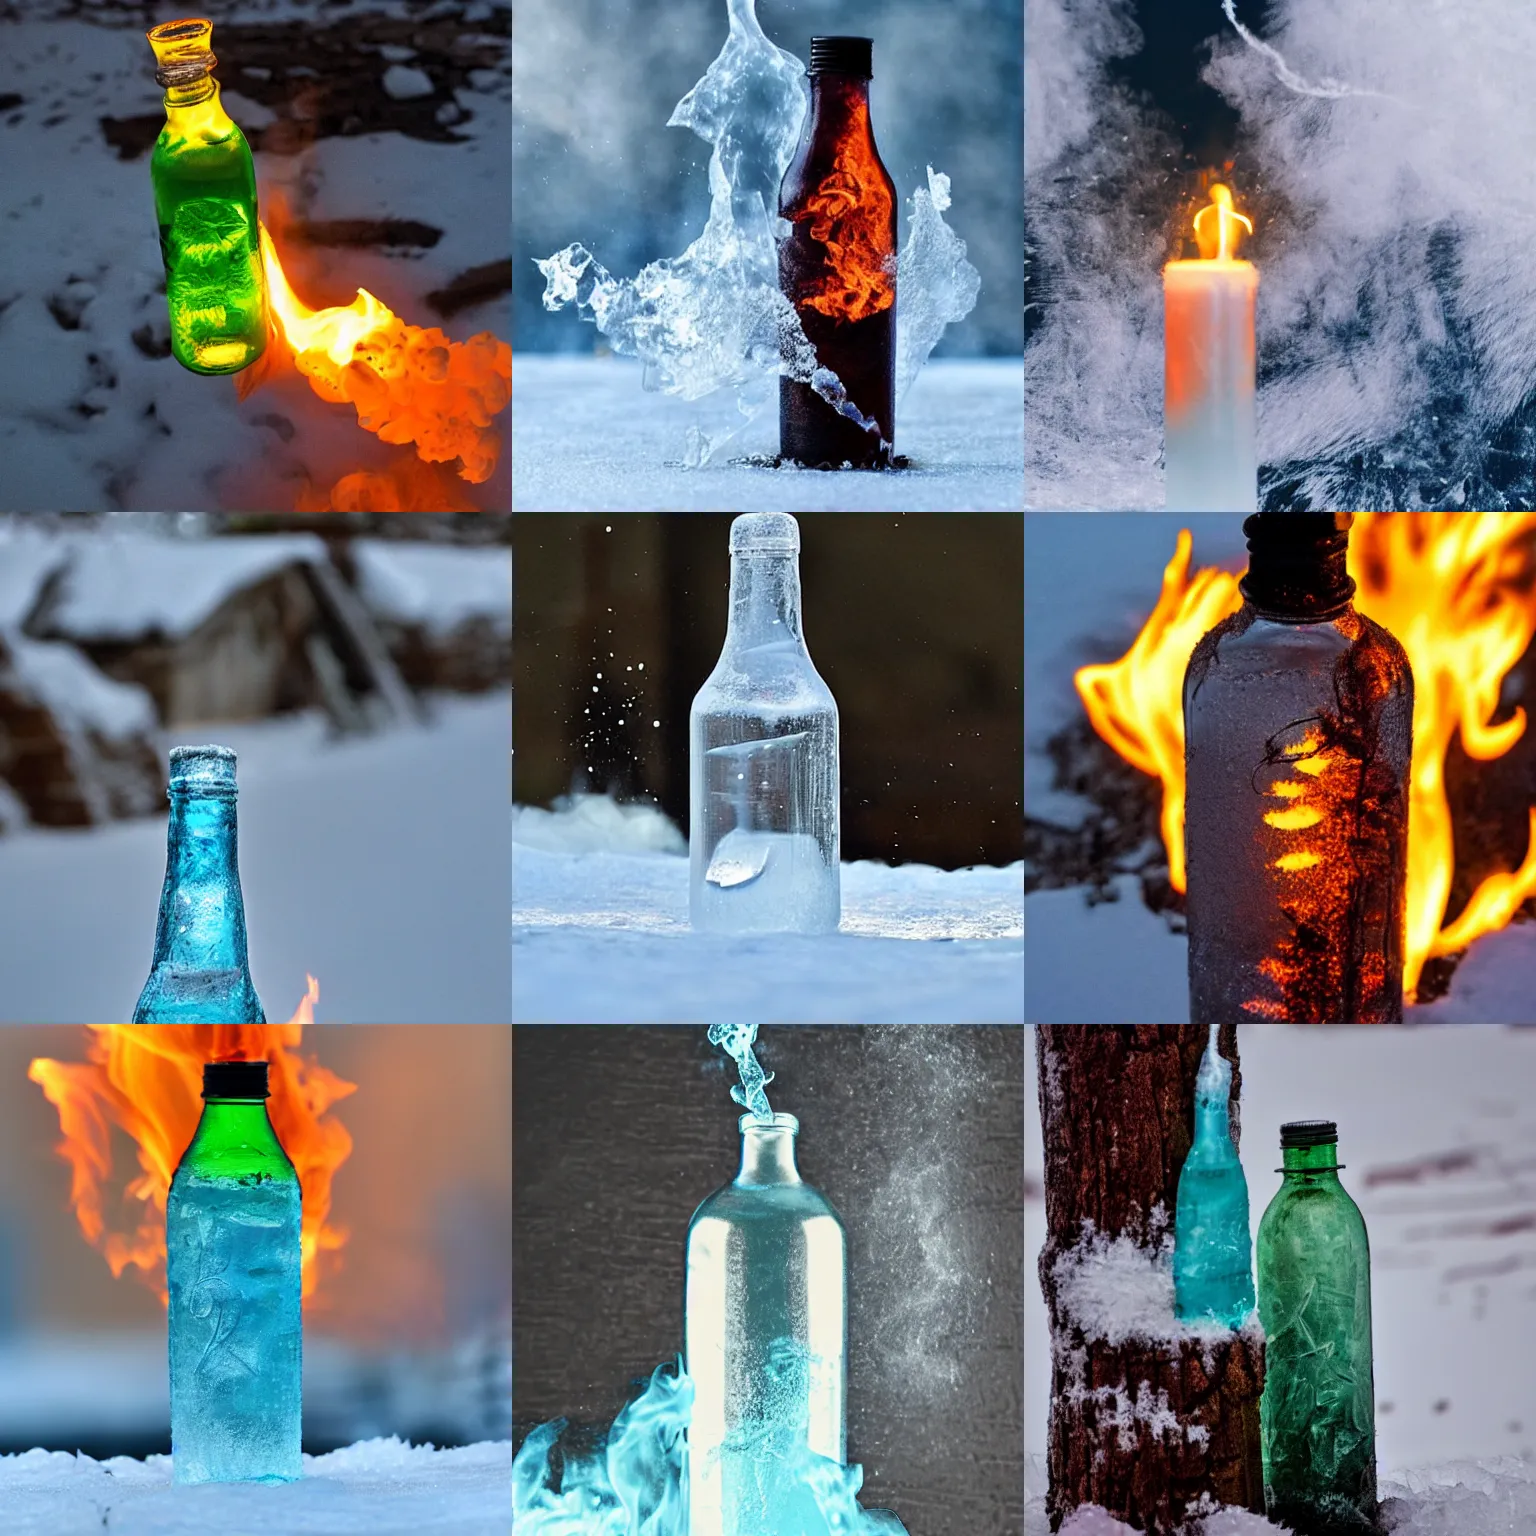 Prompt: a frozen bottle on fire